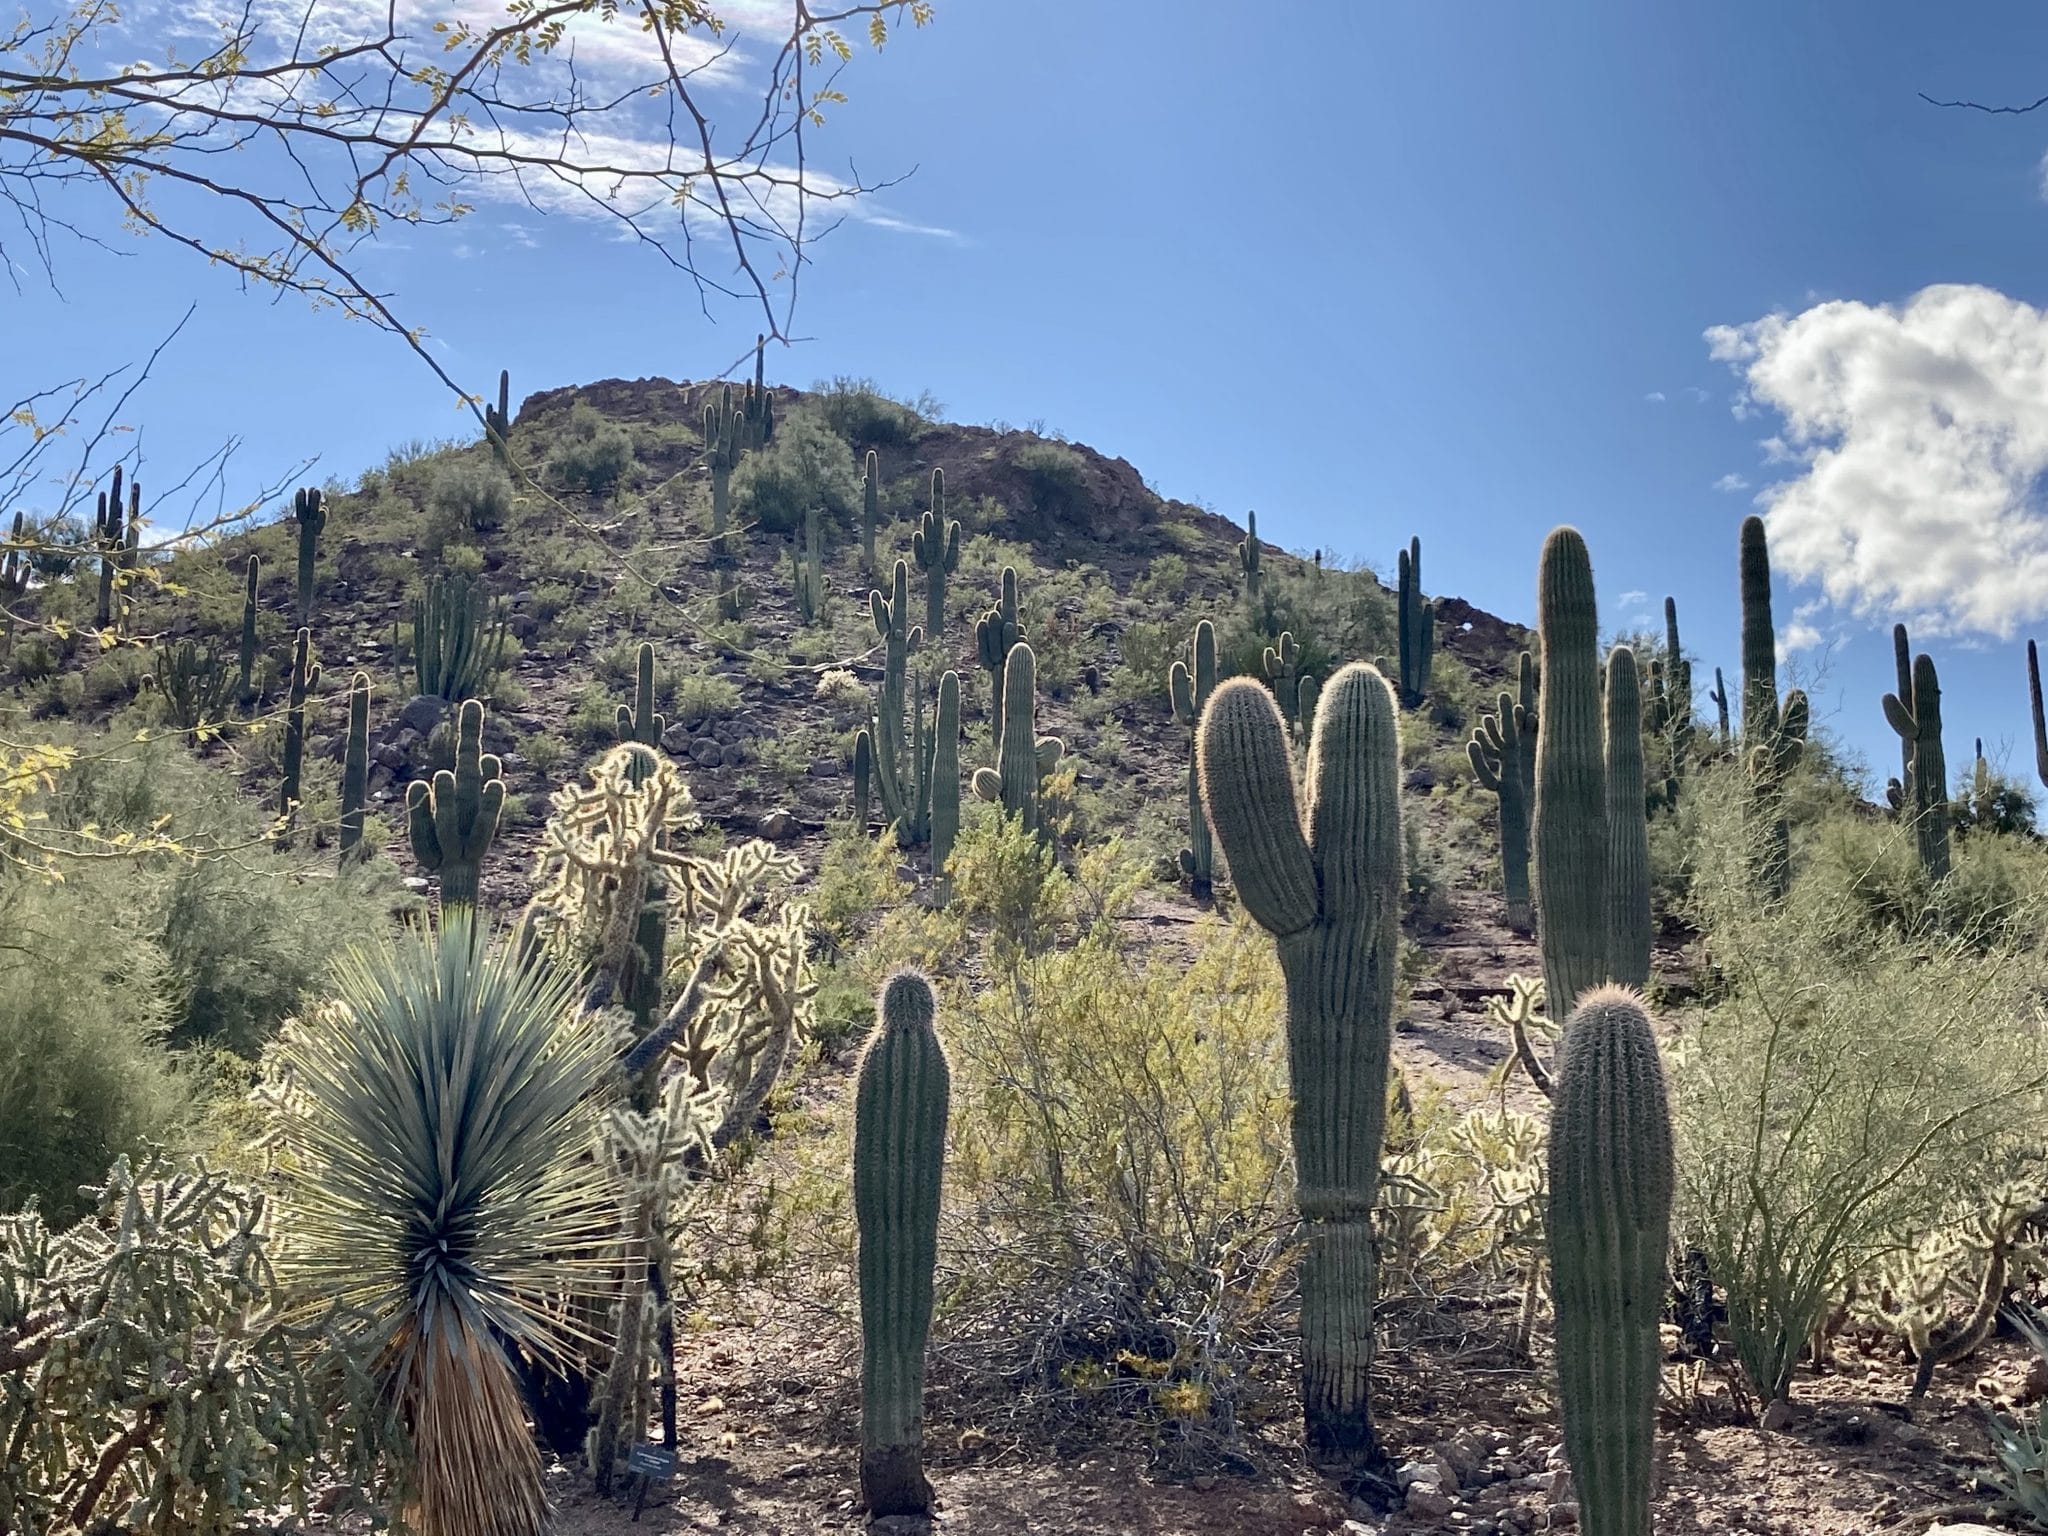 USA Roadtrip: Bild von Kaktus Wüste in Phoenix